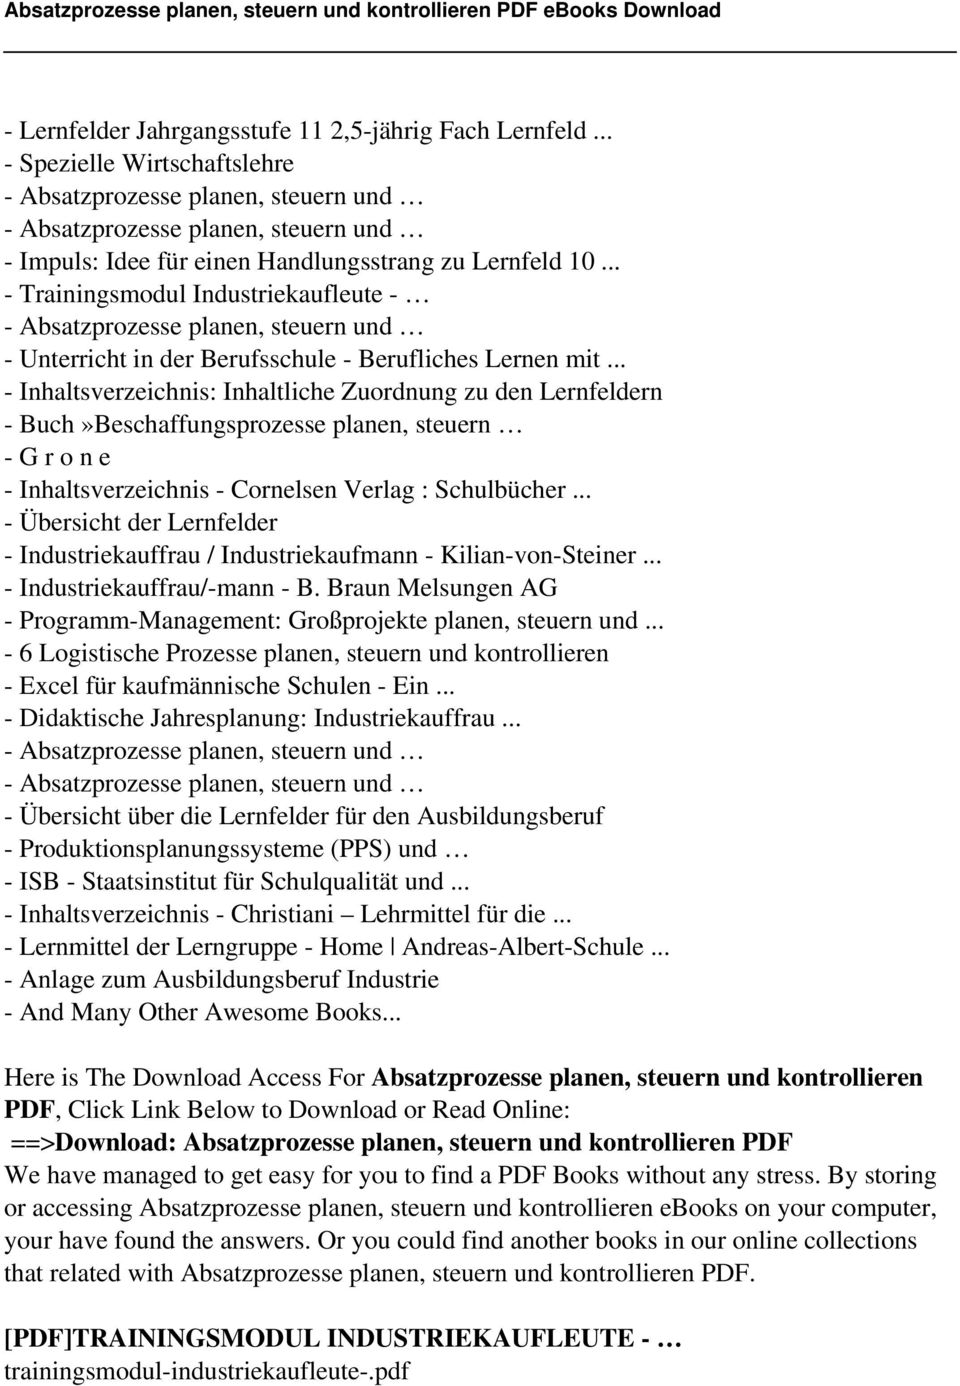 .. - Inhaltsverzeichnis: Inhaltliche Zuordnung zu den Lernfeldern - Buch»Beschaffungsprozesse planen, steuern - G r o n e - Inhaltsverzeichnis - Cornelsen Verlag : Schulbücher.